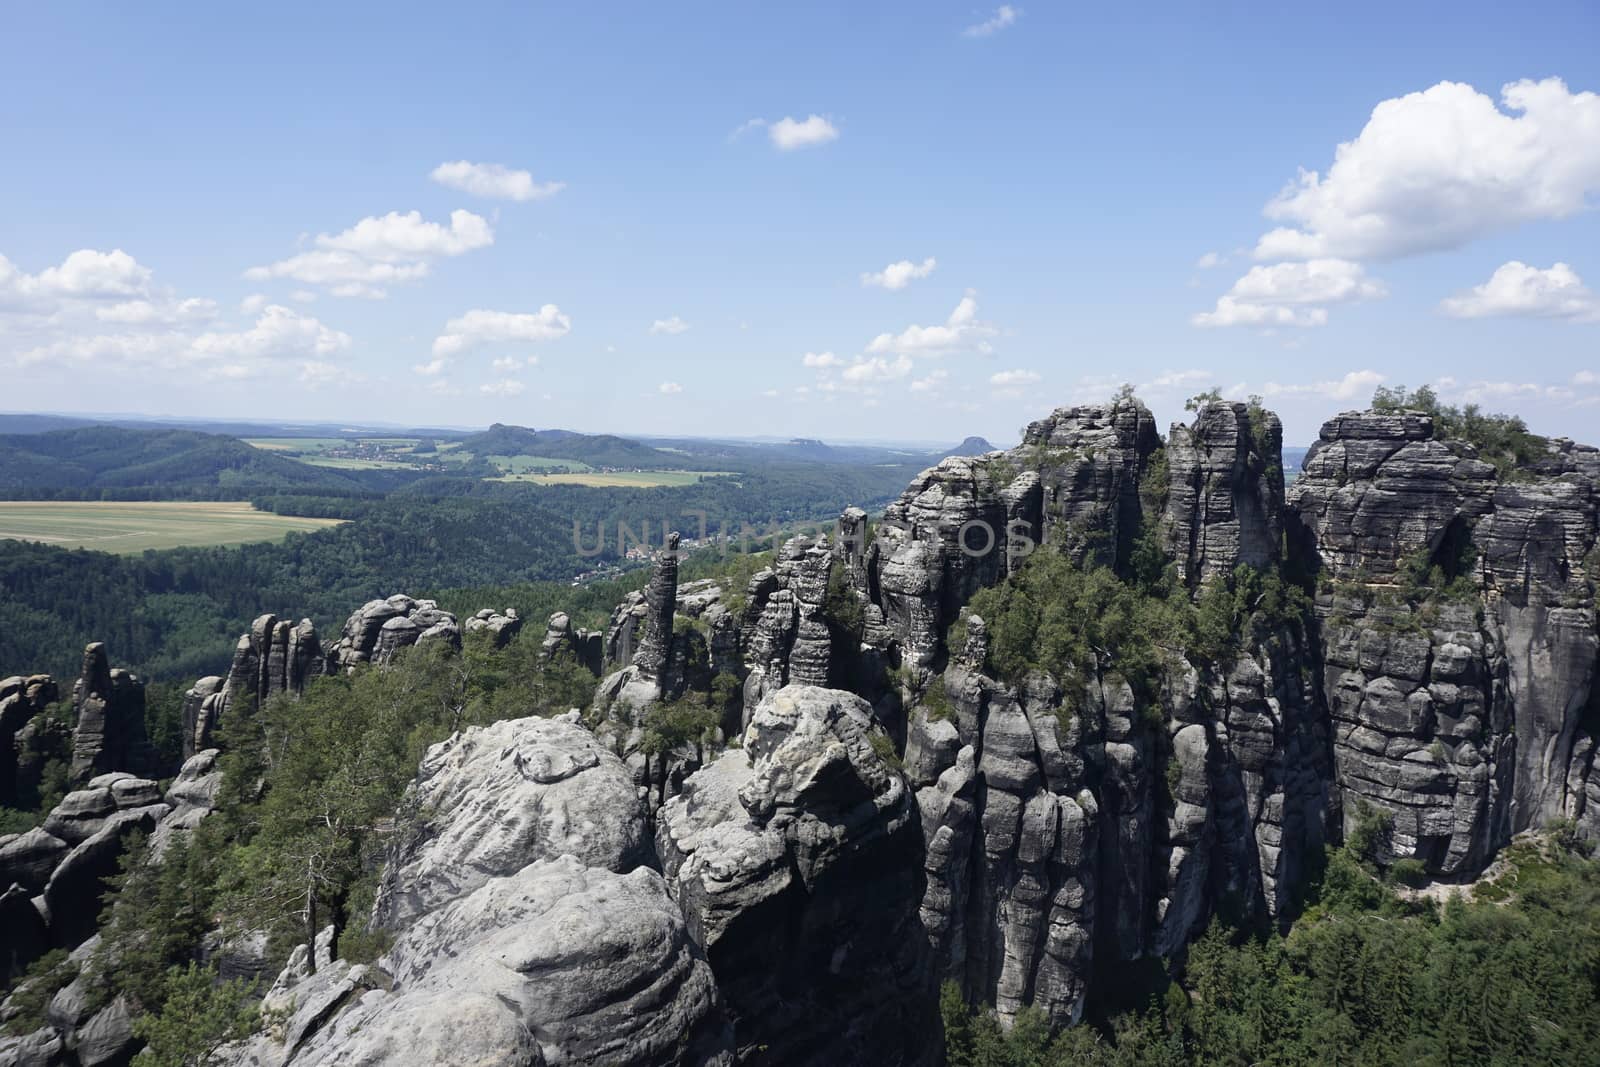 Famous main Schrammsteine rocks from the Schrammstein viewpoint in Saxon Switzerland, Germany